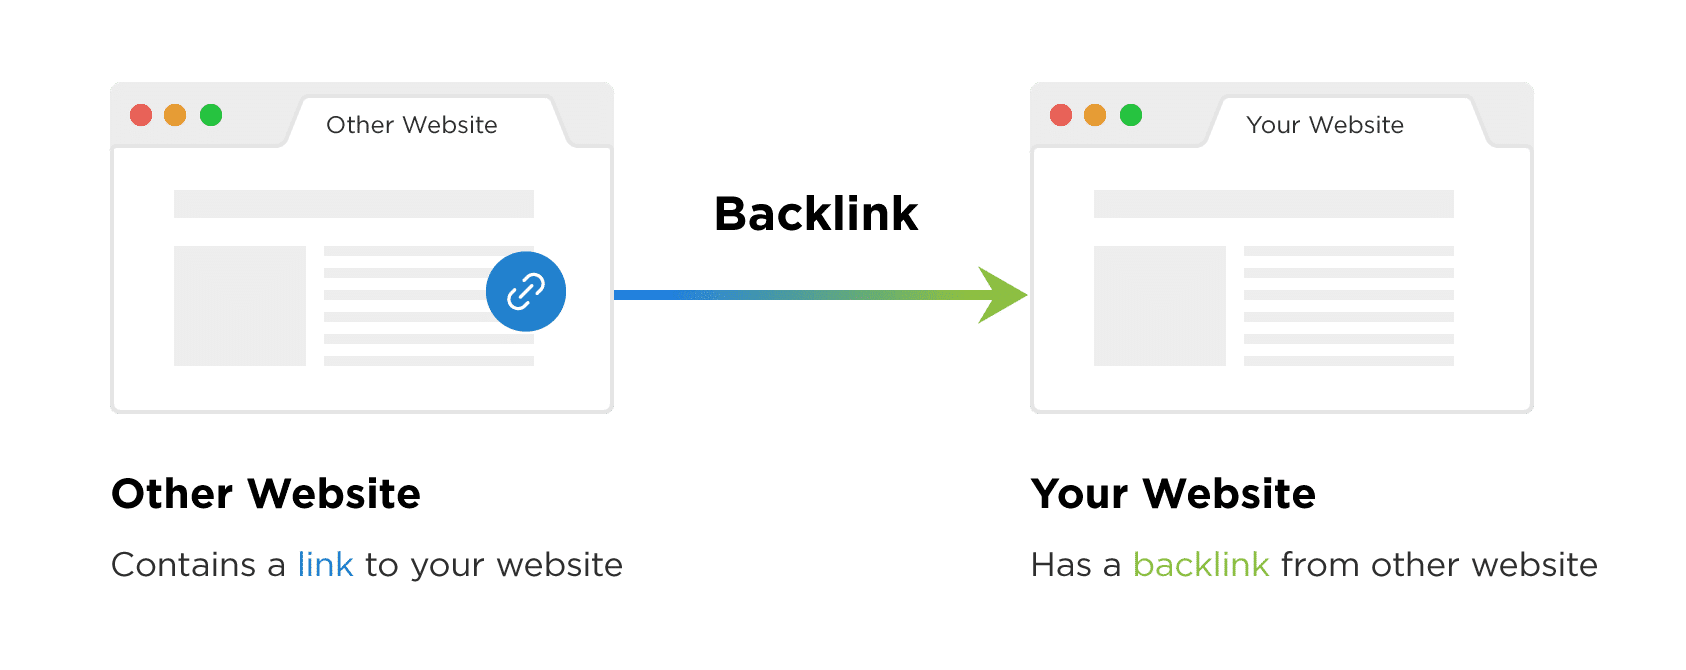 Other Website to Your Website Backlink Illustration